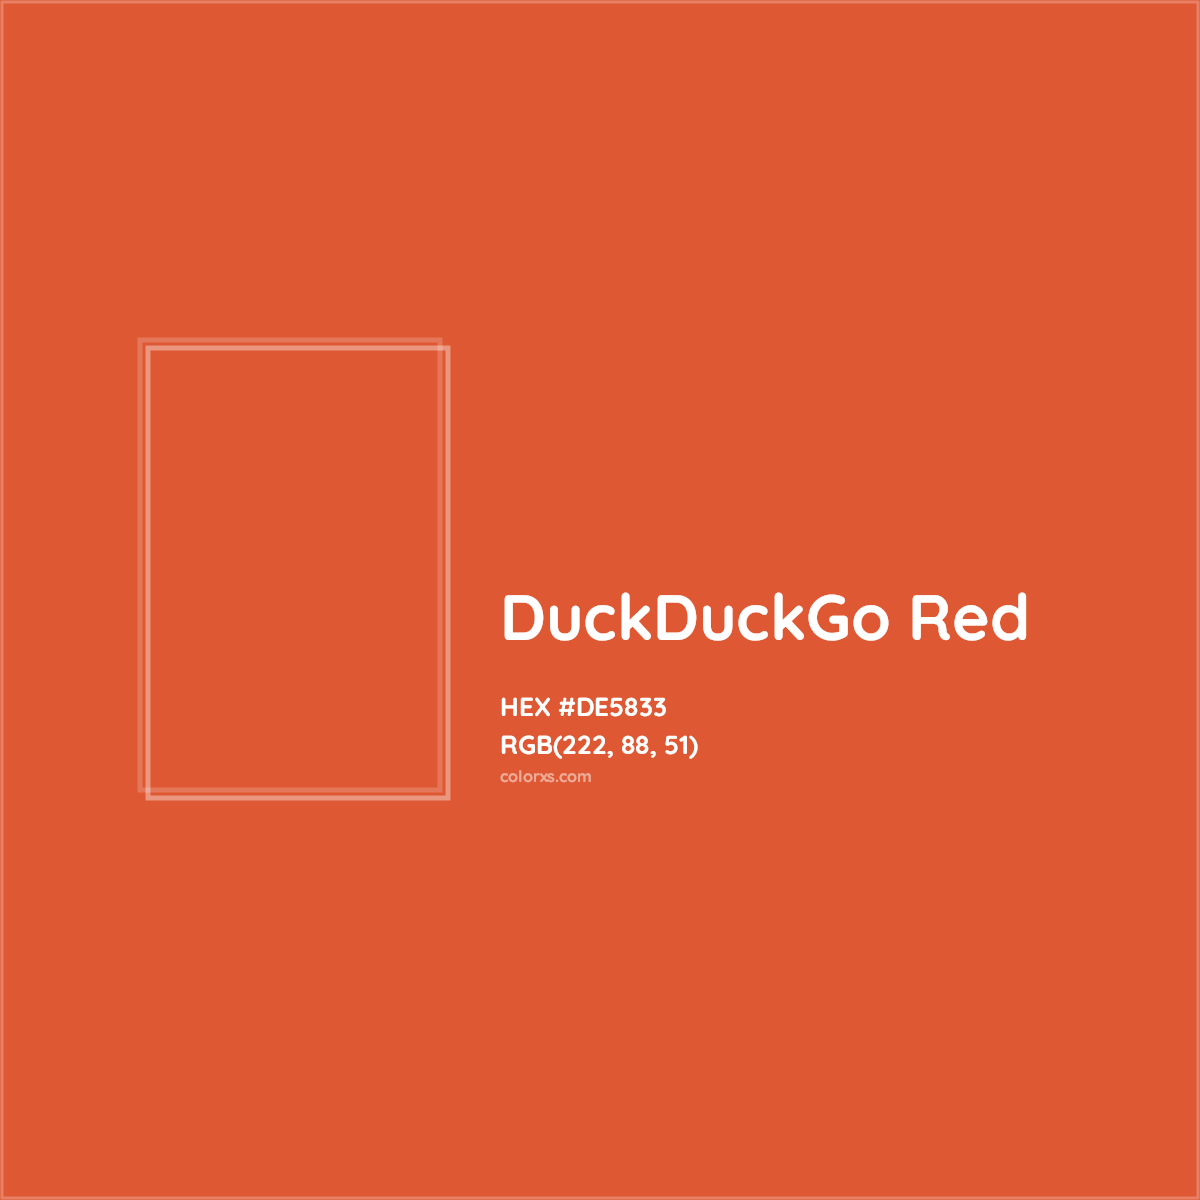 HEX #DE5833 DuckDuckGo Red Other Brand - Color Code